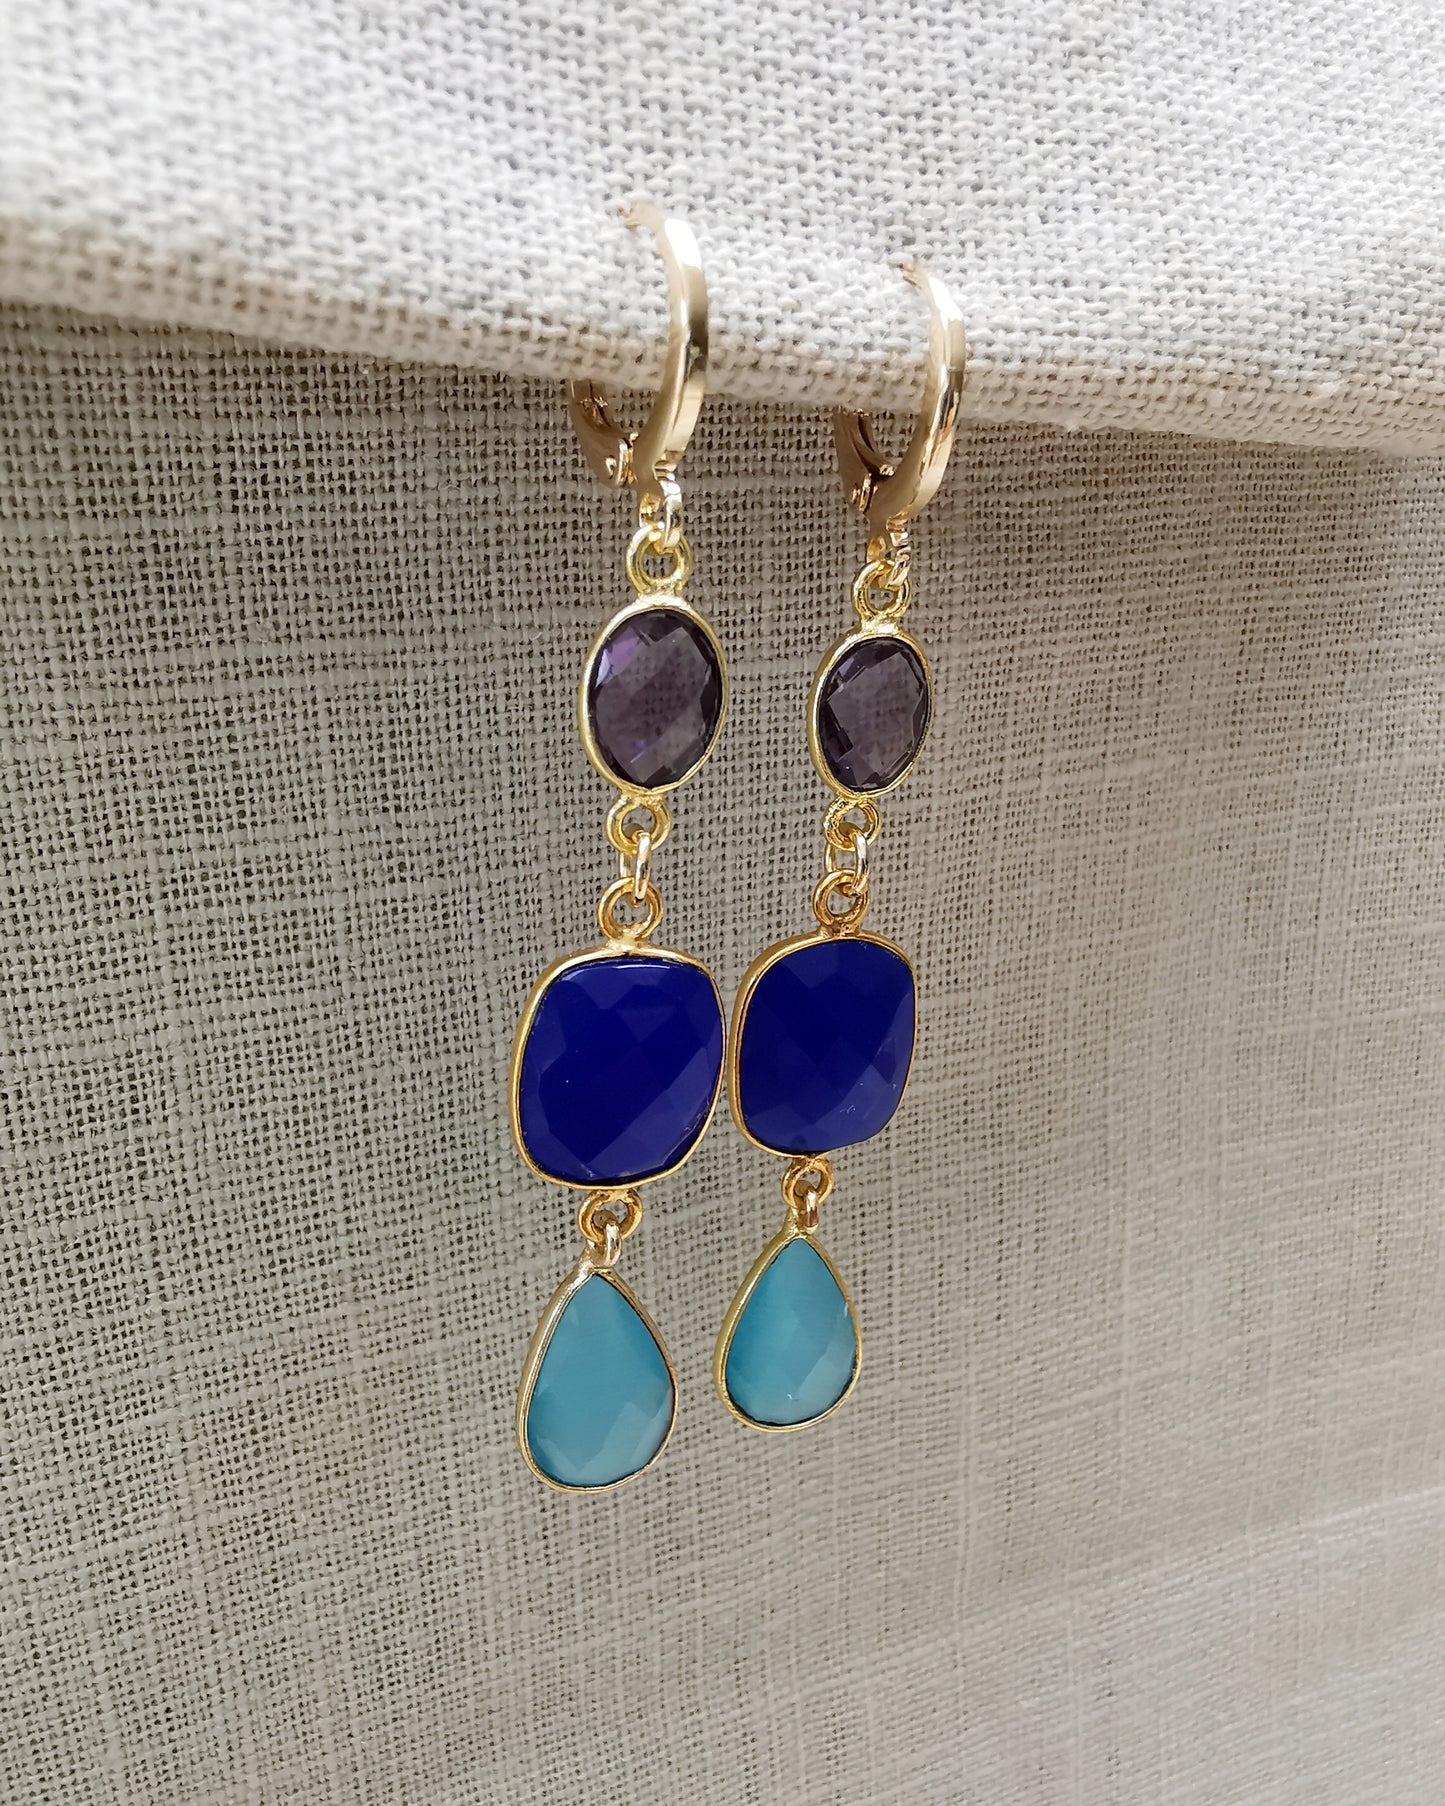 Gemstone Long Earrings Amethyst + Blue ultramarine Chalcedony + Light Blue Monalisa stone.